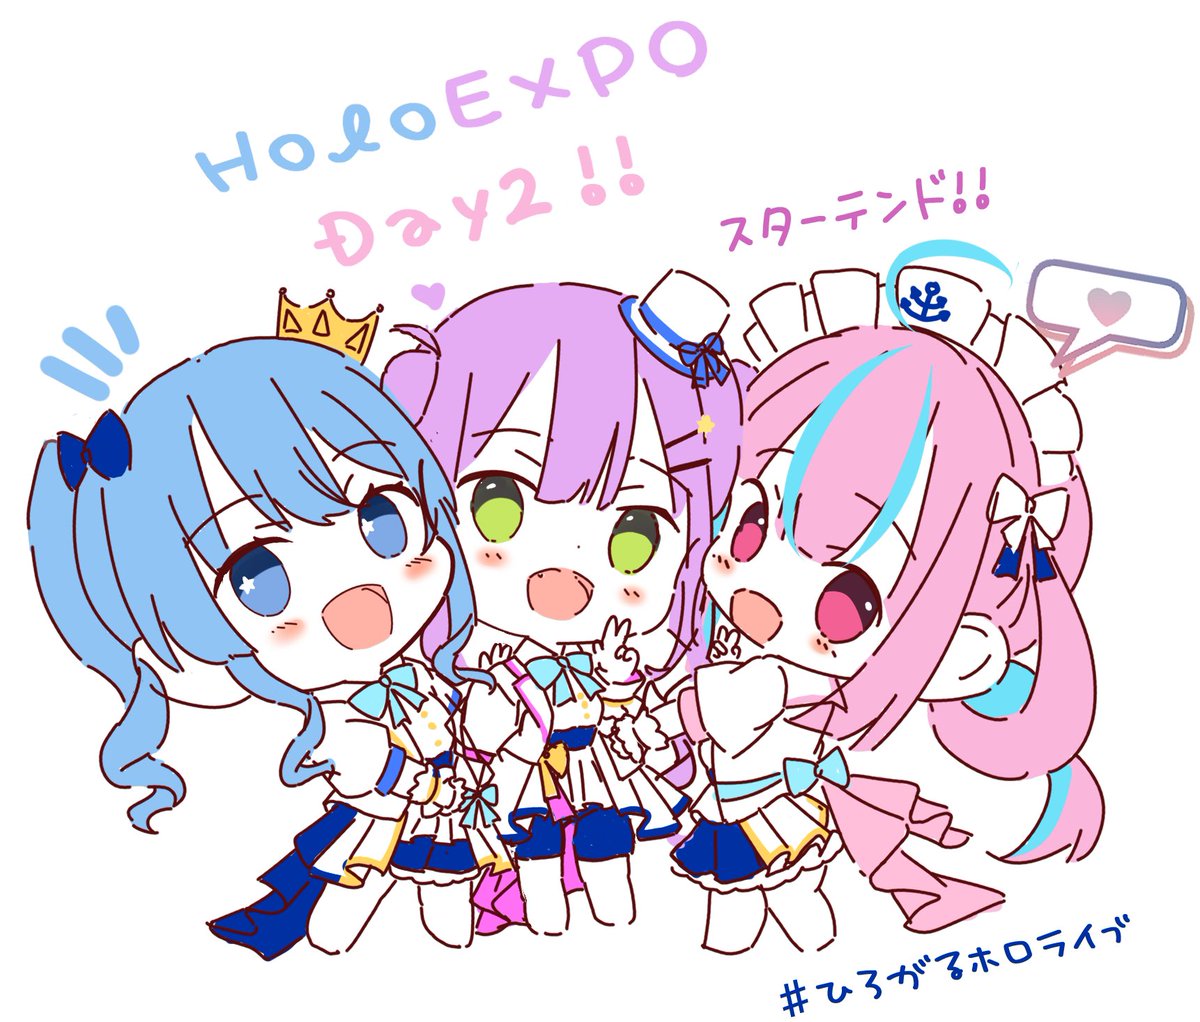 hoshimachi suisei ,minato aqua ,tokoyami towa multiple girls 3girls blue hair chibi blue eyes green eyes purple hair  illustration images